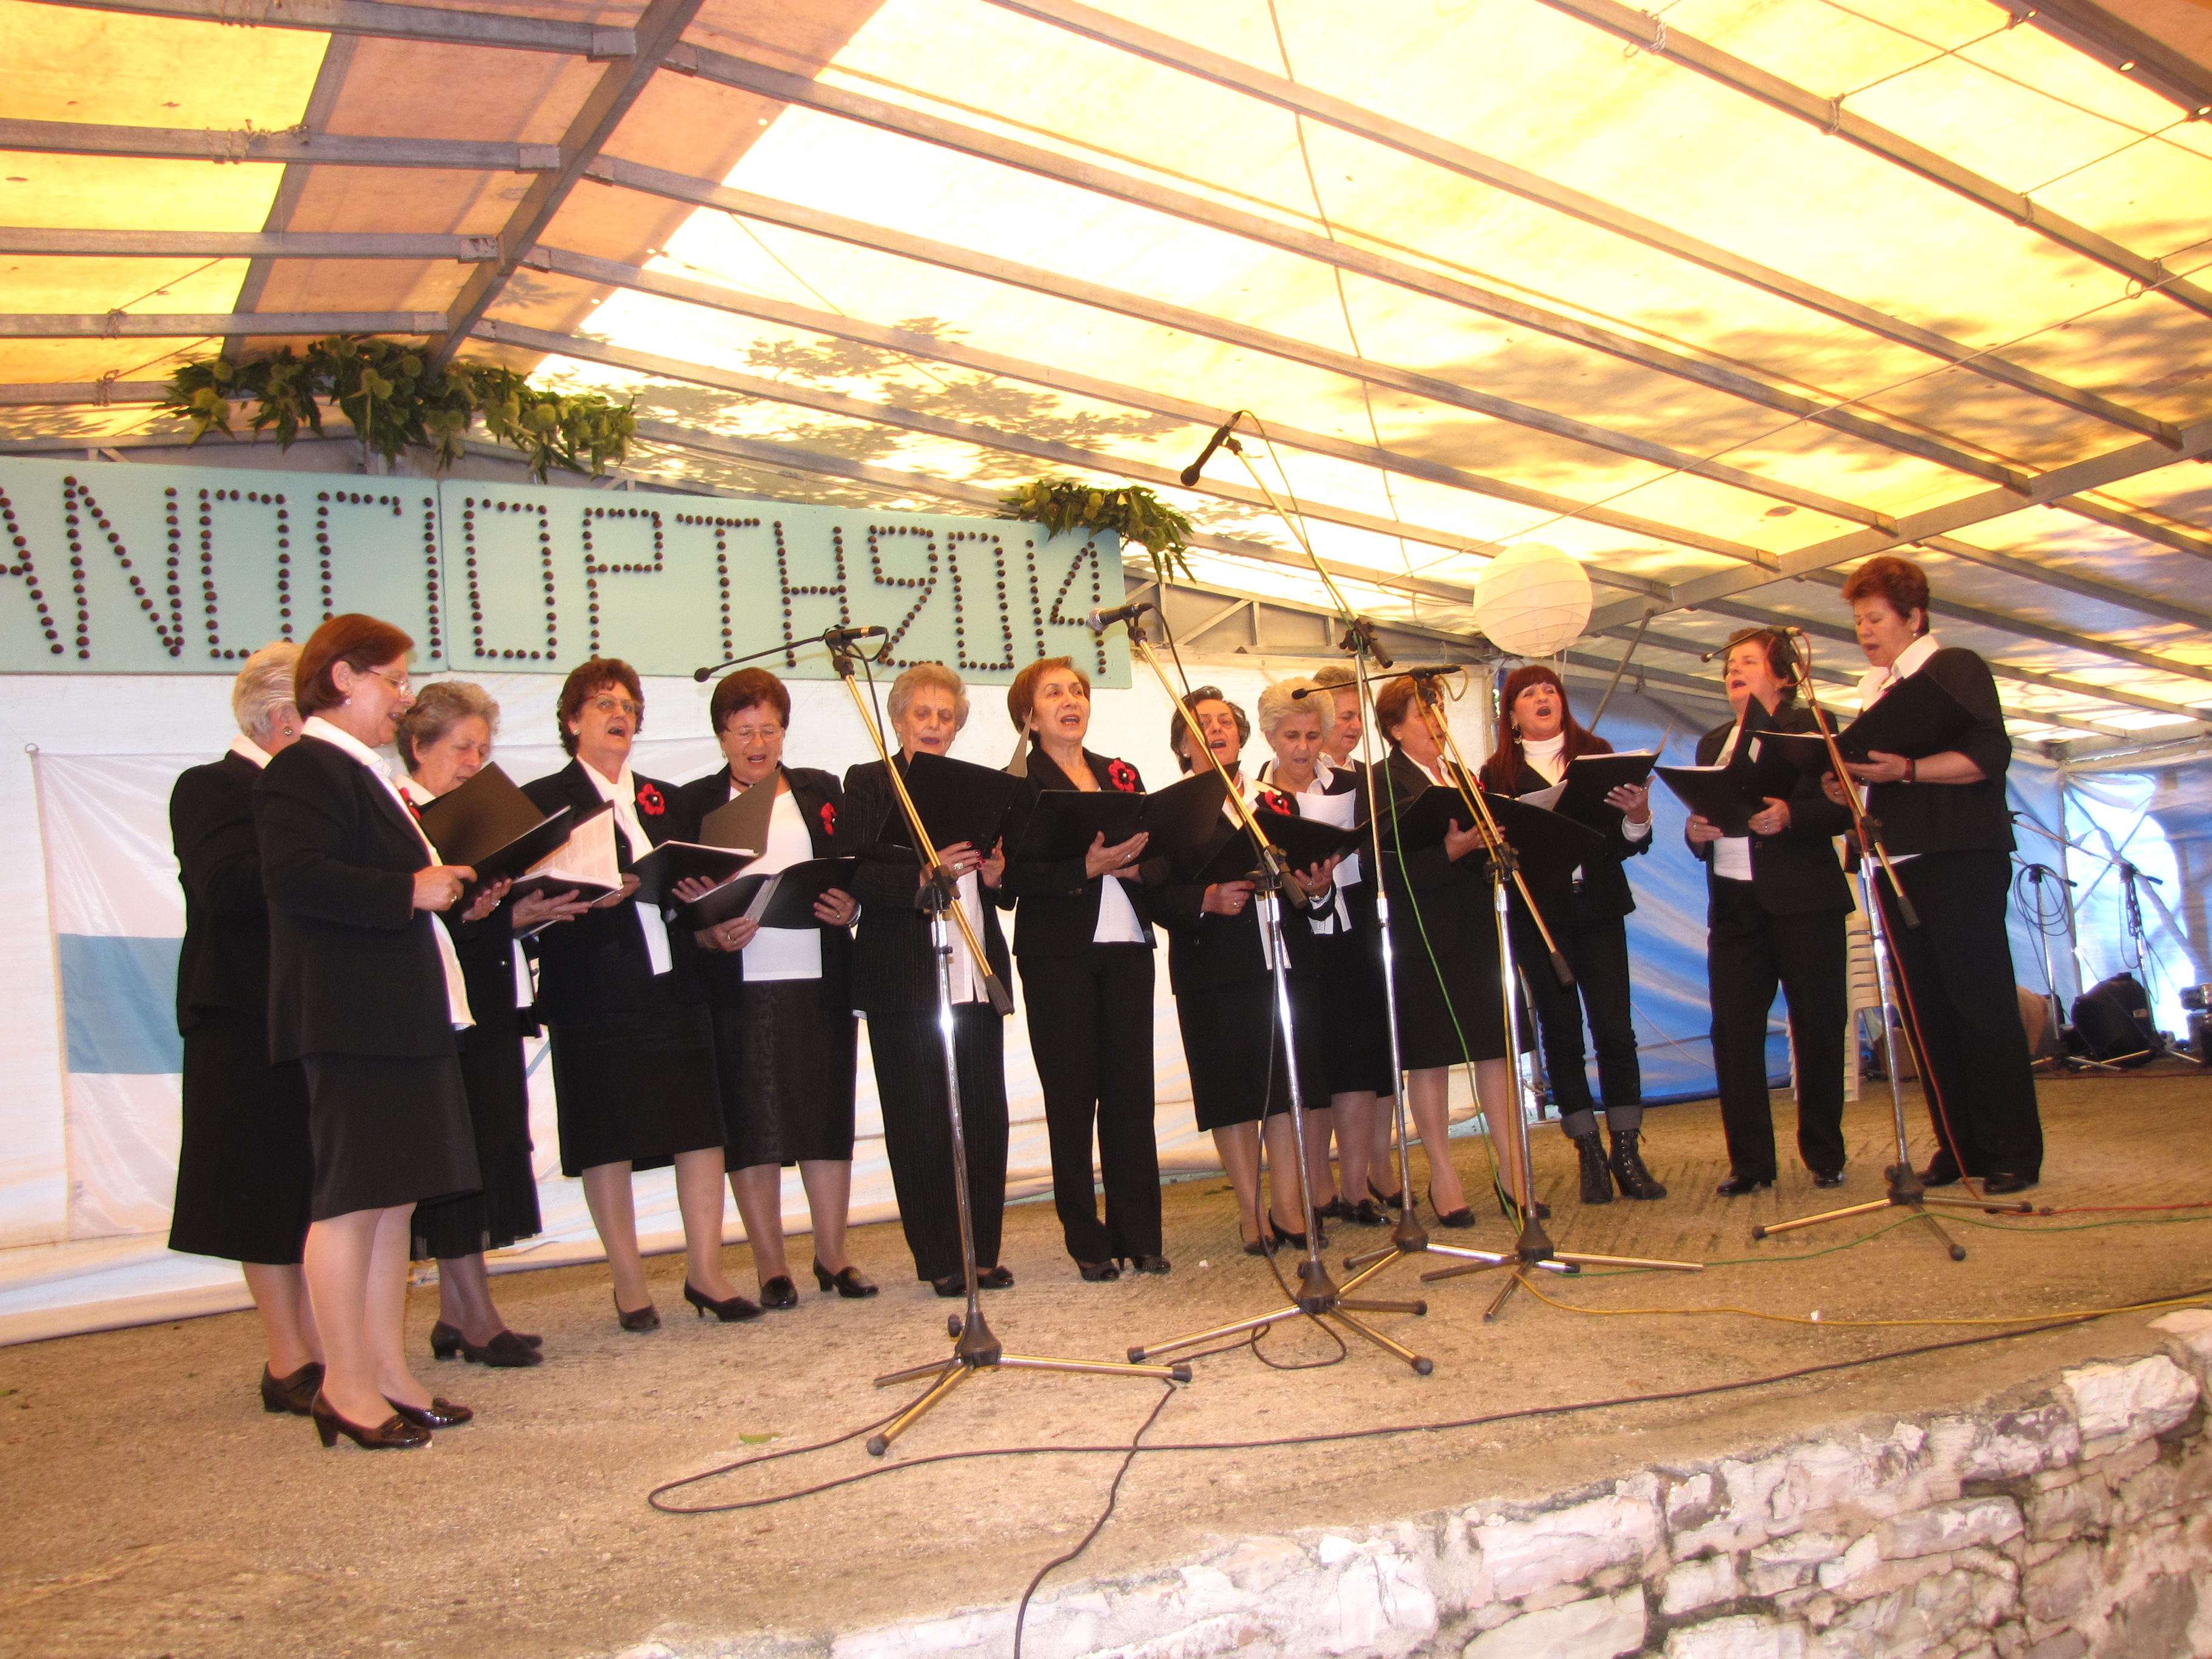 Η Καστανογιορτή 2014 στον Ελληνόπυργο Καρδίτσας